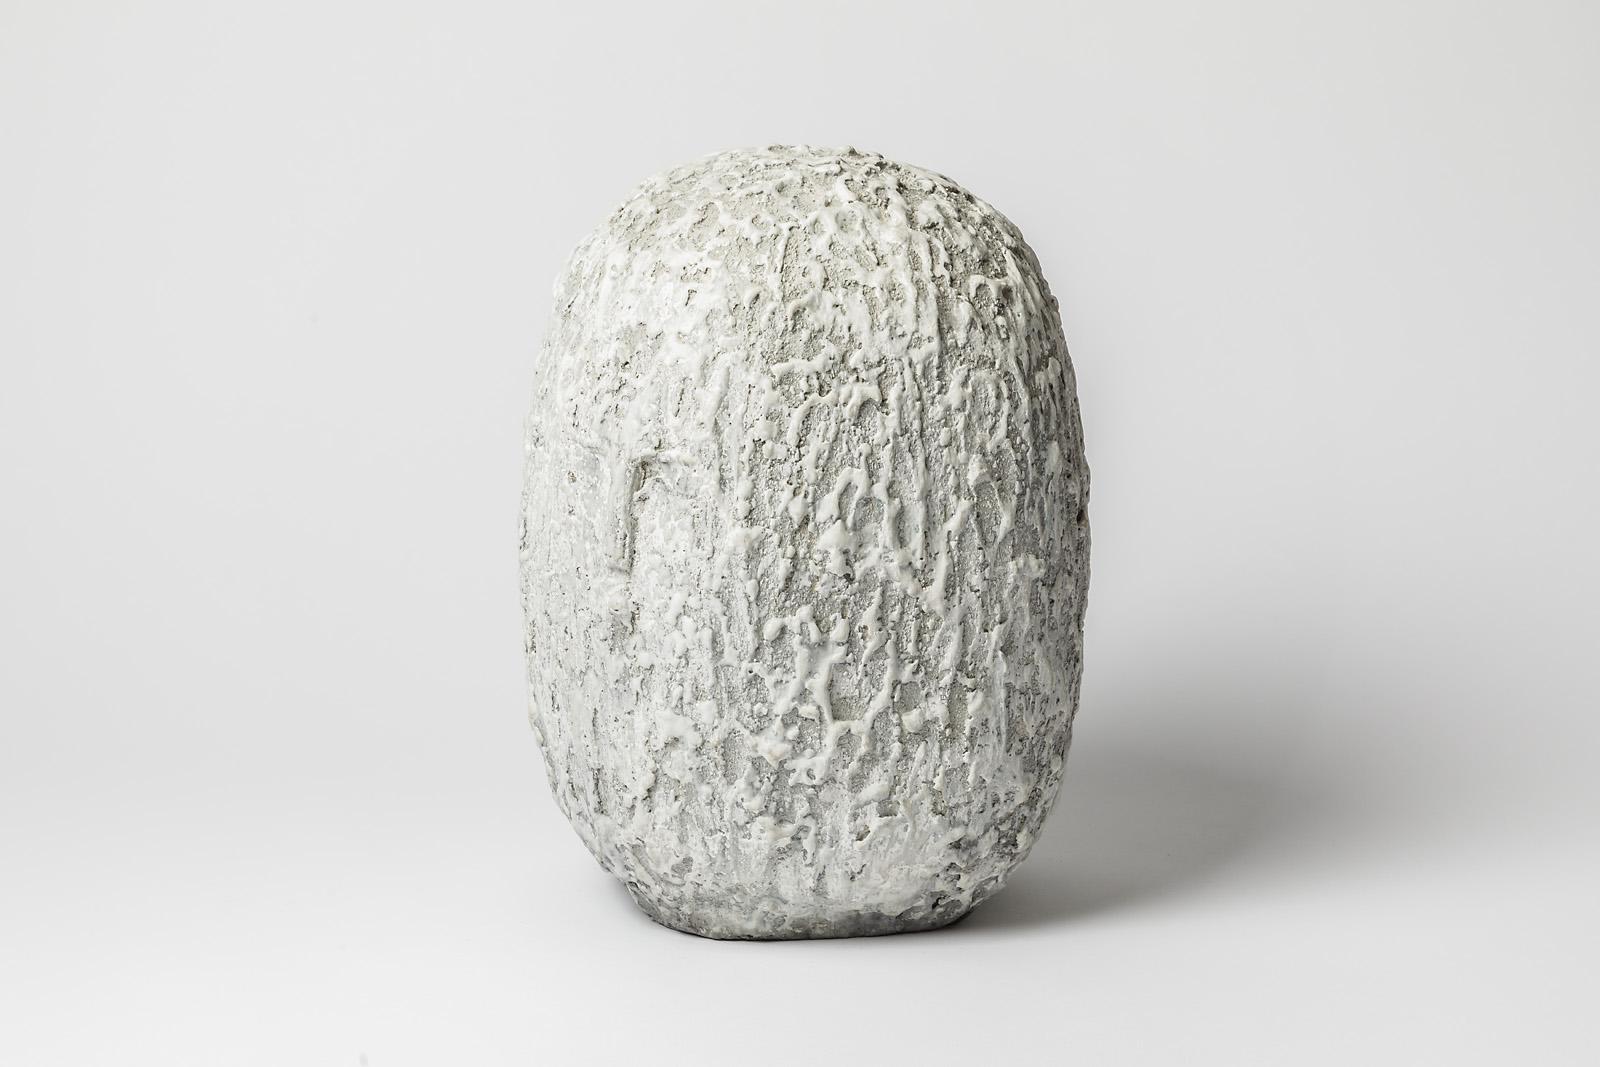 Eine Keramikskulptur mit weißer Glasur, die einen Kopf darstellt, von Gisele Buthod-Garçon.
Perfekter Originalzustand.
Unter dem Sockel signiert.
Ca. 2017.
Einzigartiges Stück.